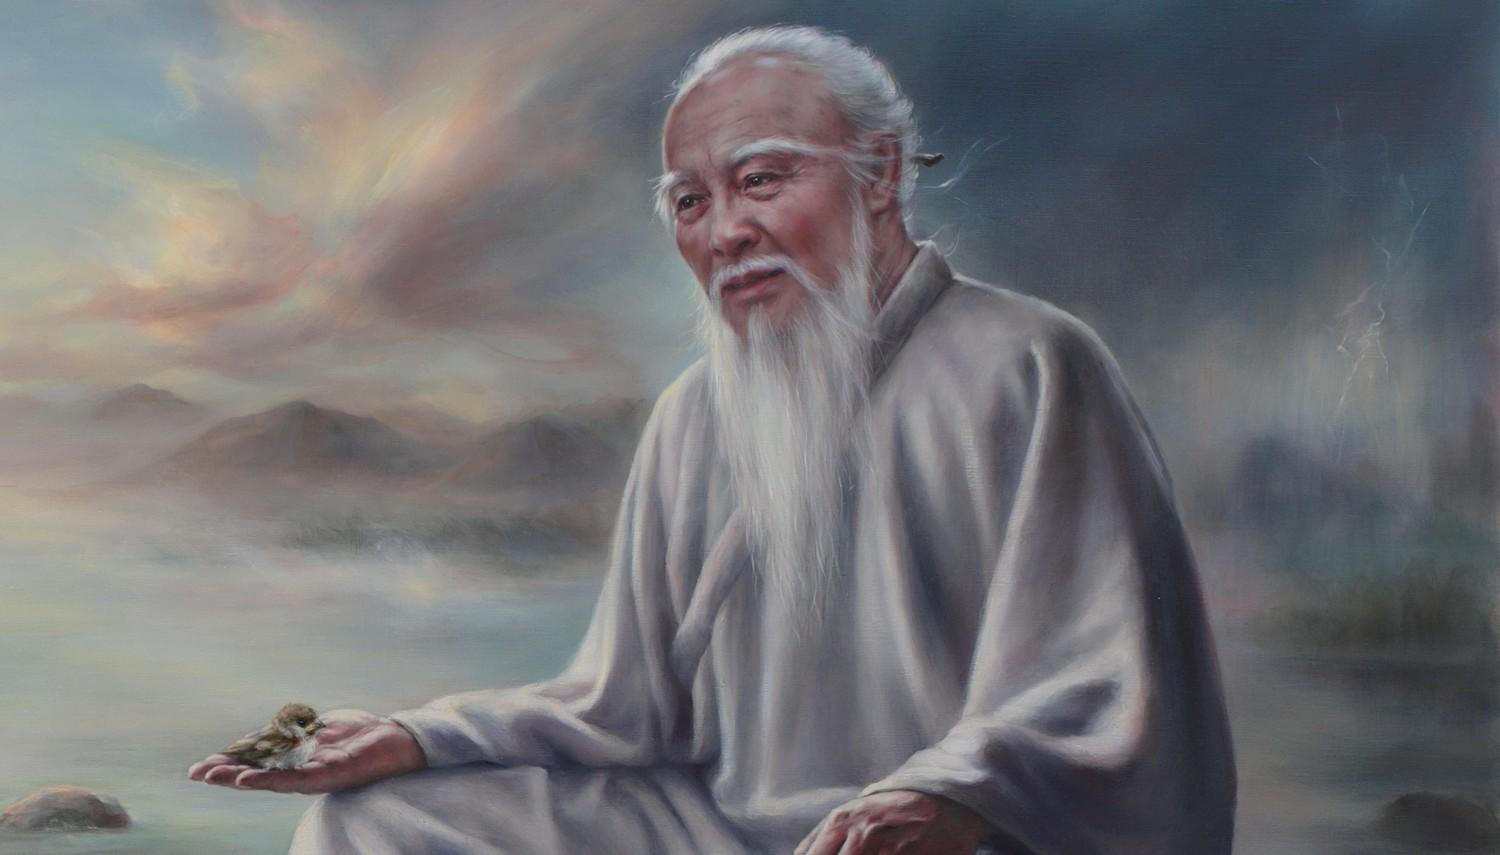 Résultat de recherche d'images pour "Taoizmin kurucusu, Çinli filozof, yaşlı filozof olarak da bilinen Lao Tzu dan bir öykü:"